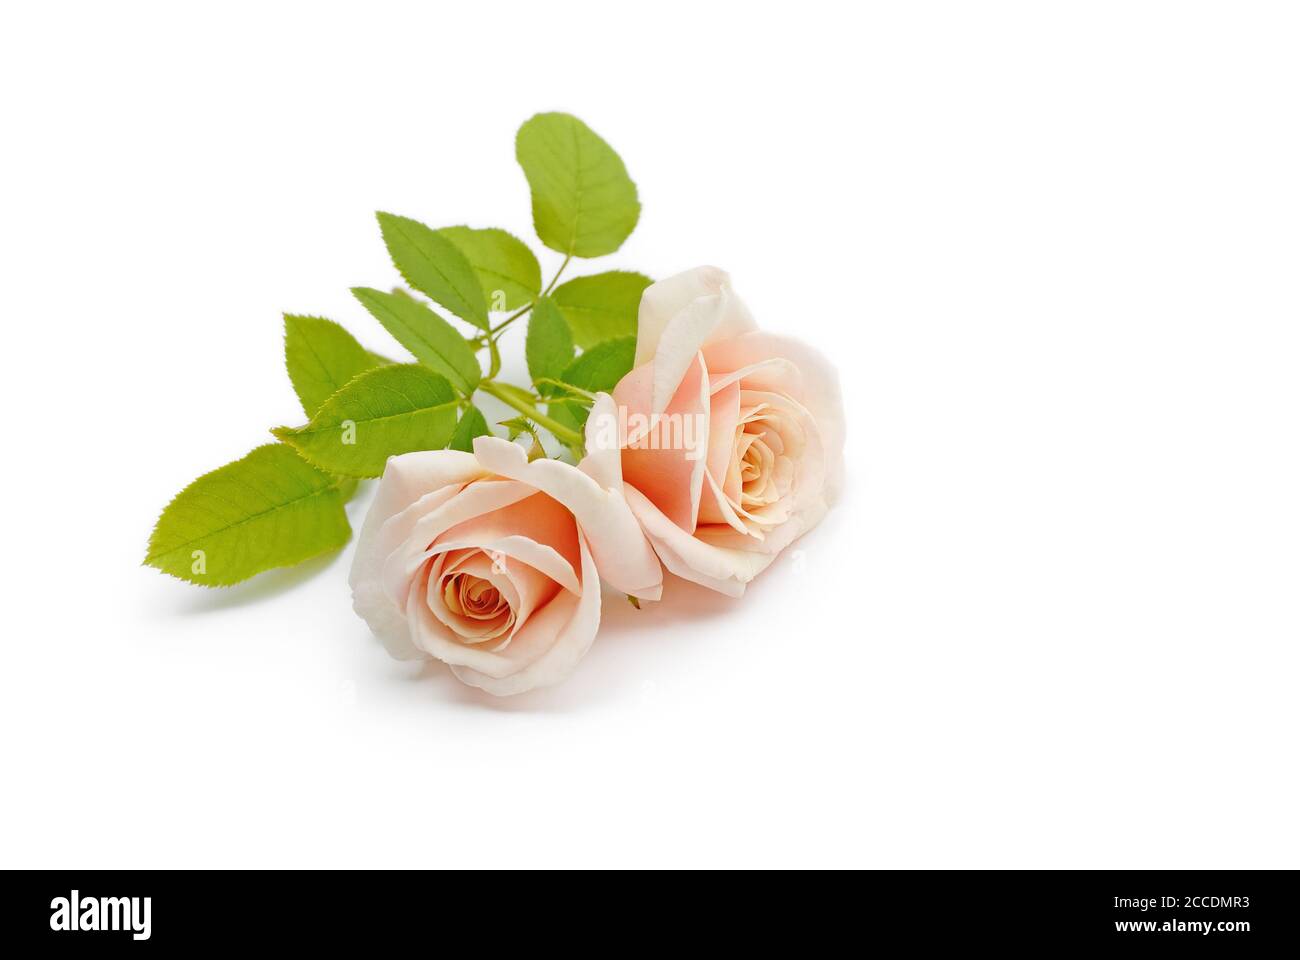 de belles roses isolées se trouvent sur fond blanc Banque D'Images